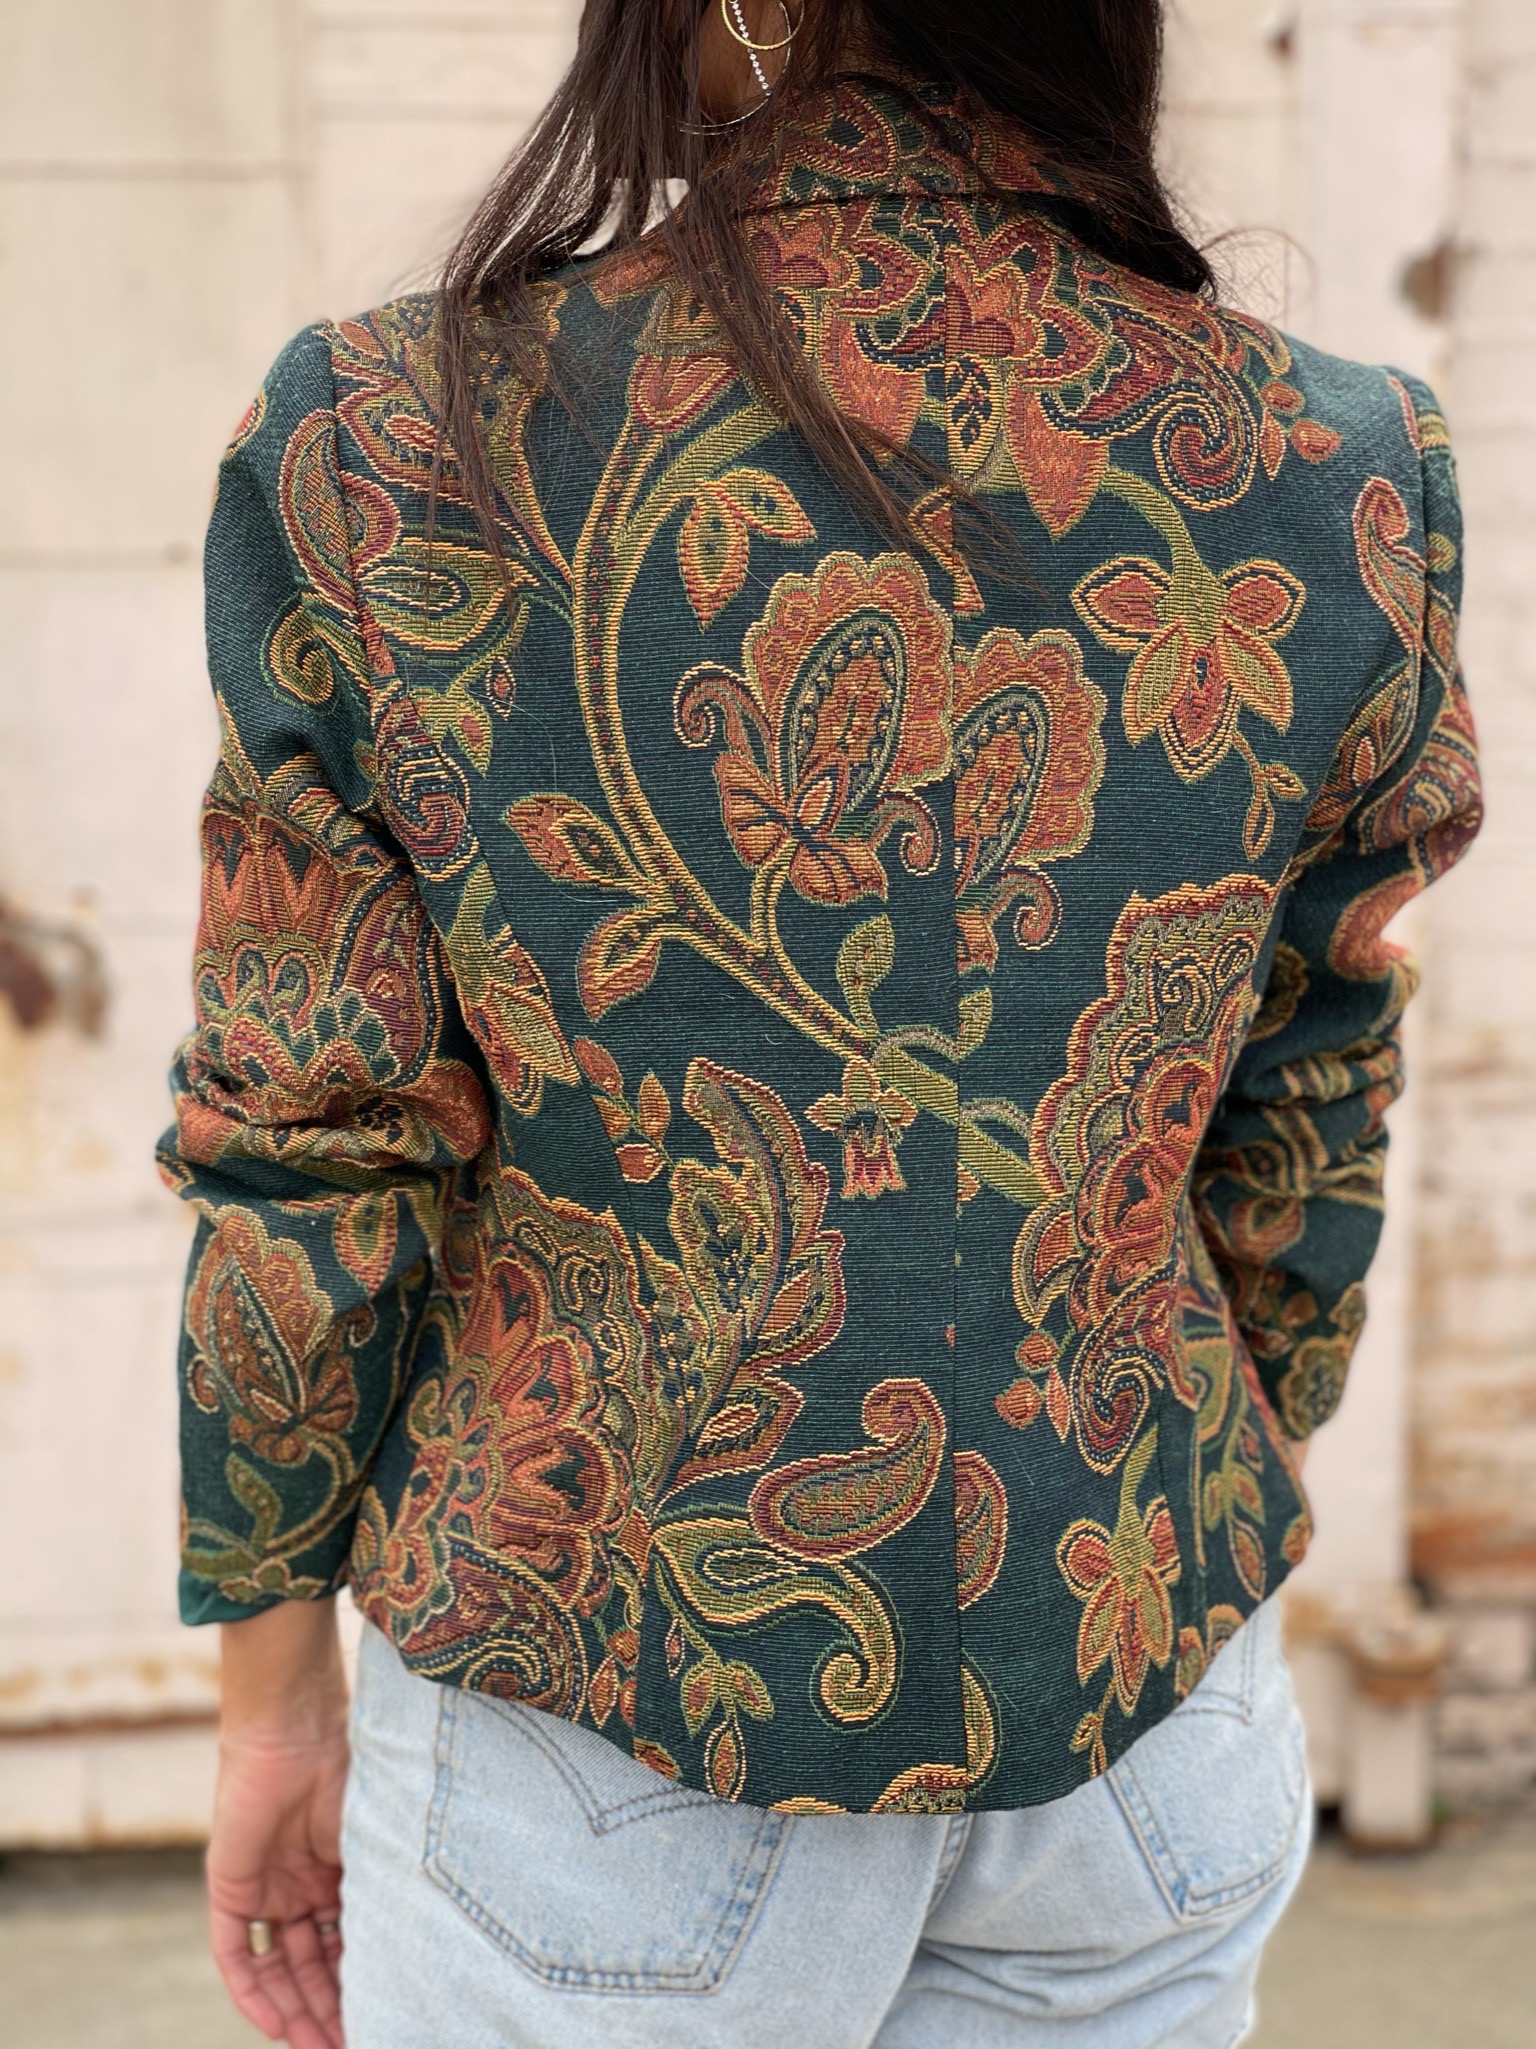 Fashion Nova Men's Bellevue Floral Tapestry Work Jacket